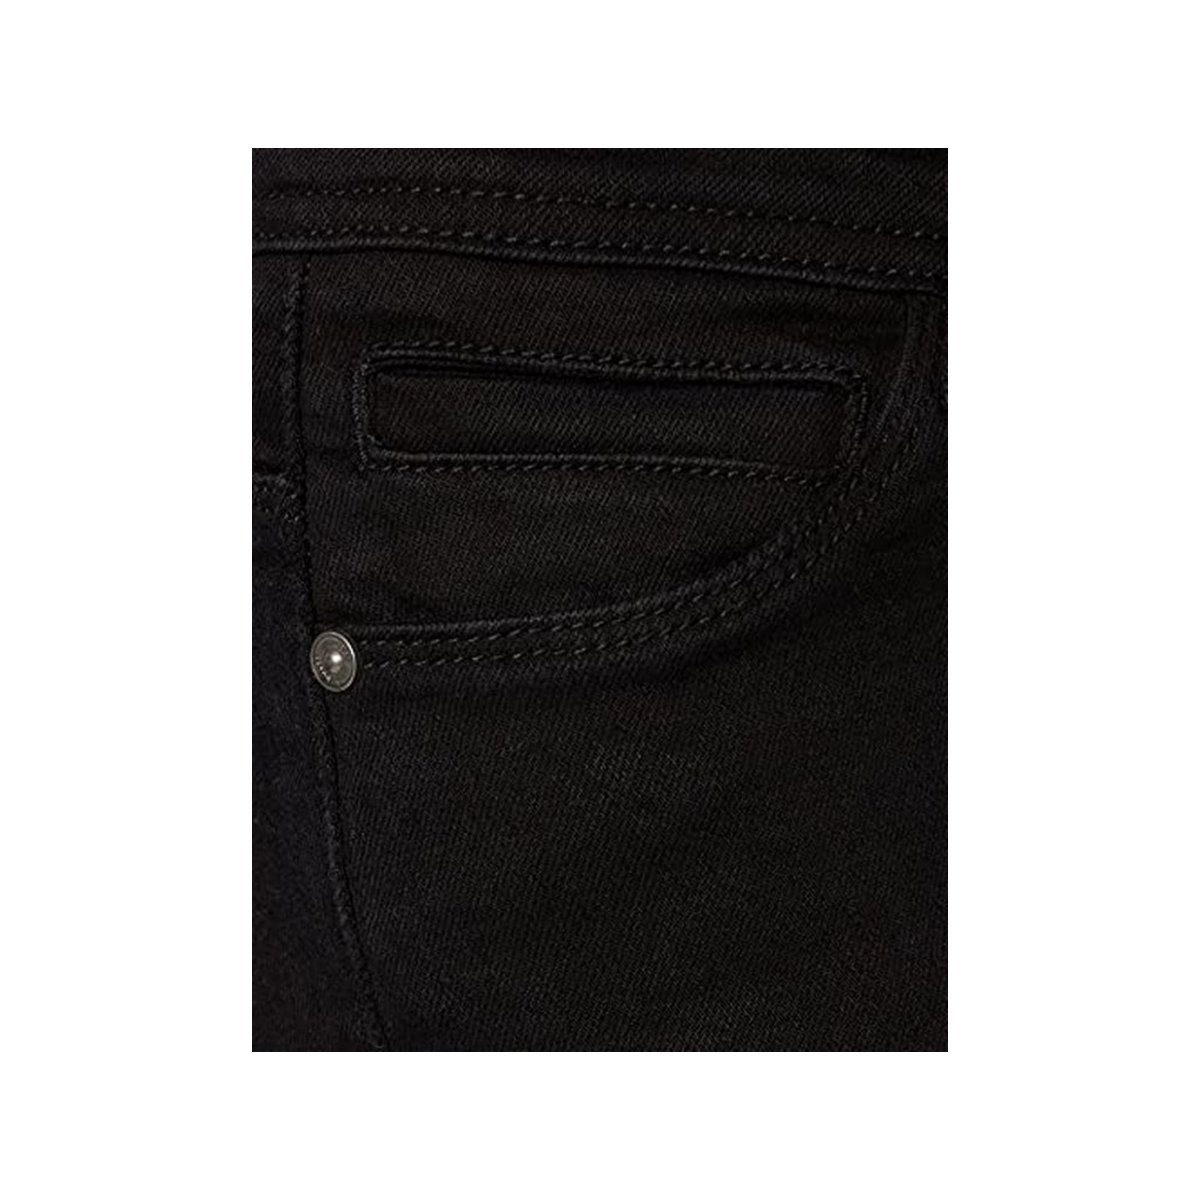 (1-tlg) Noisy schwarz 5-Pocket-Jeans may